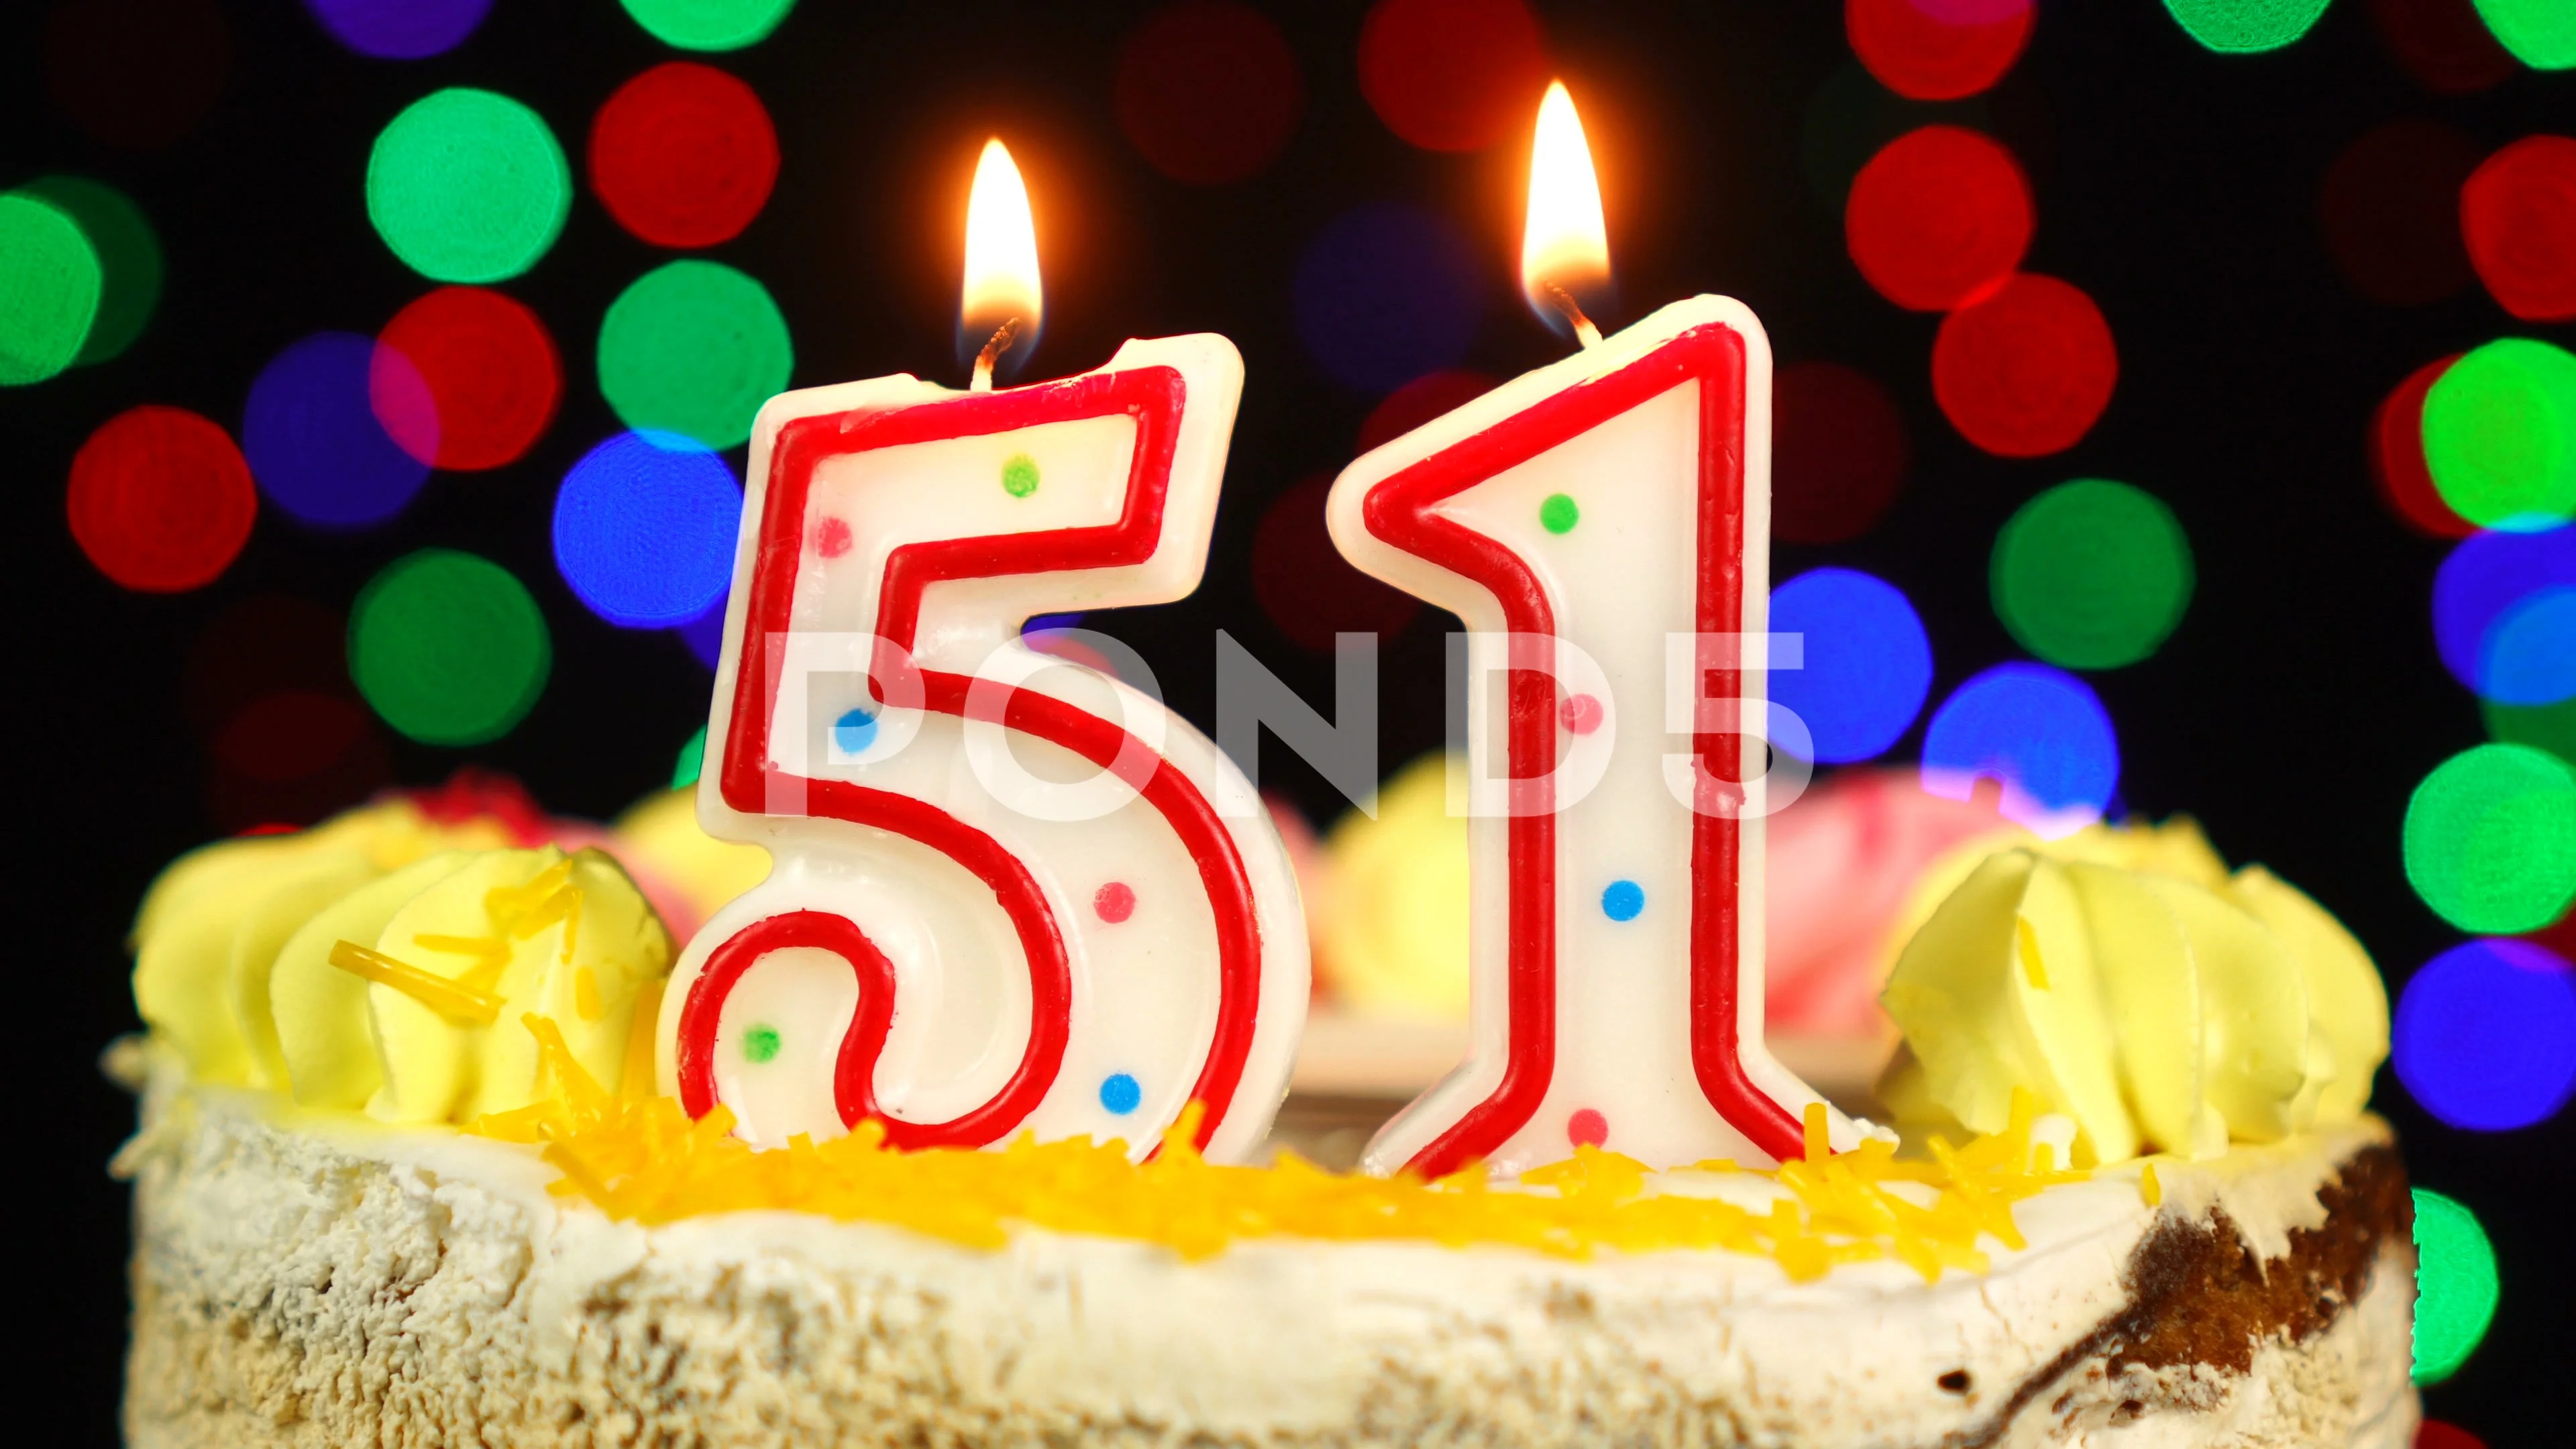 51 51st Birthday Cake Topper Svg 51 51st Happy Birthday Cake - Etsy